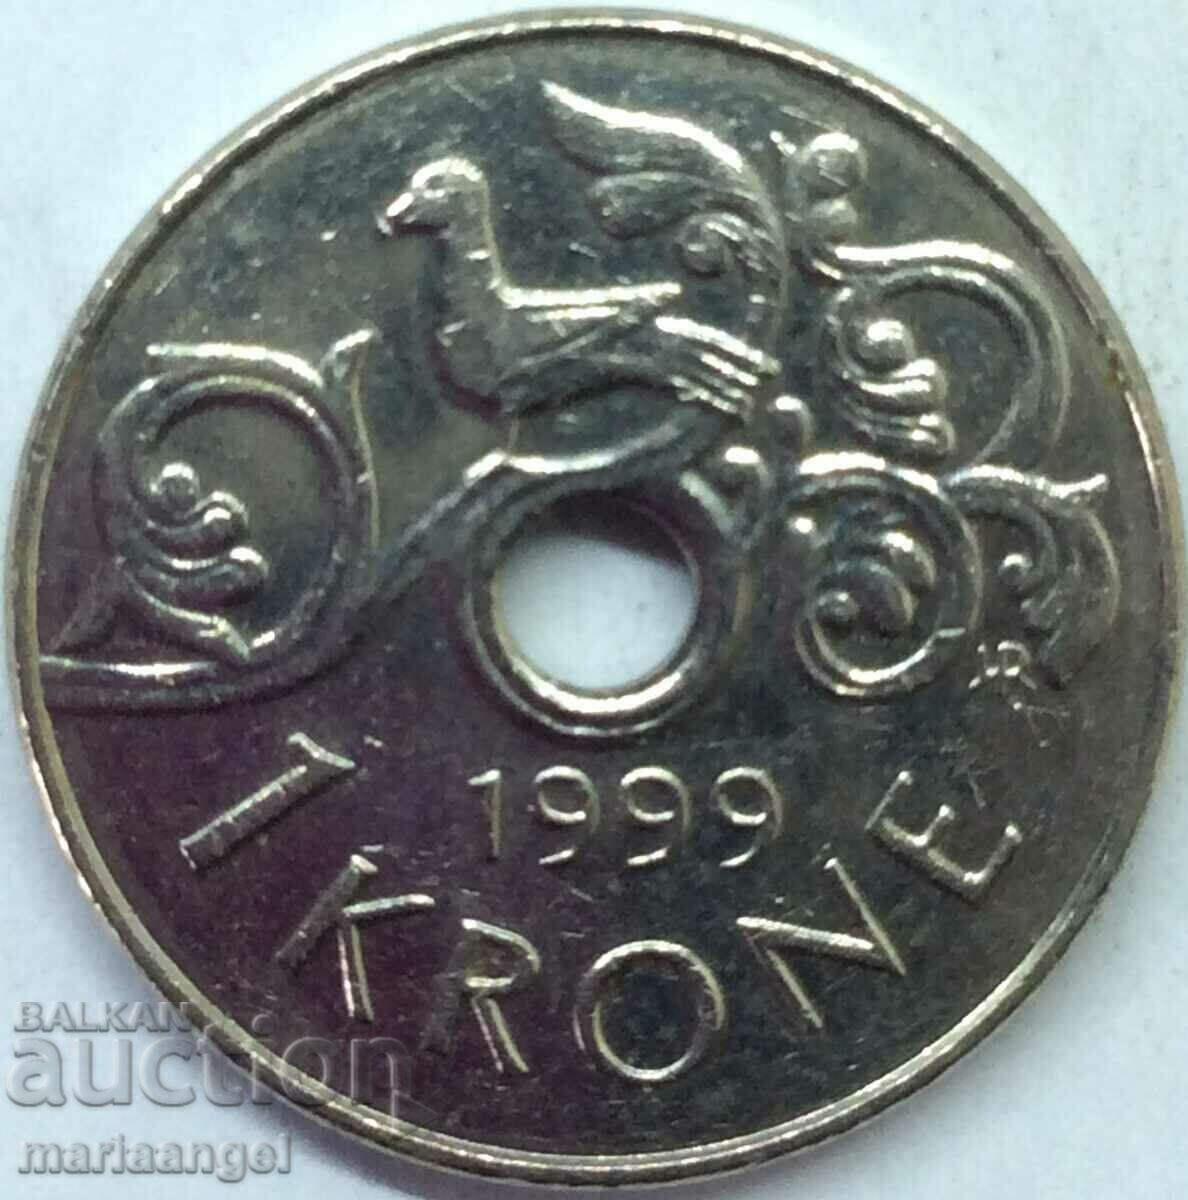 Norway 1 kroner 1999